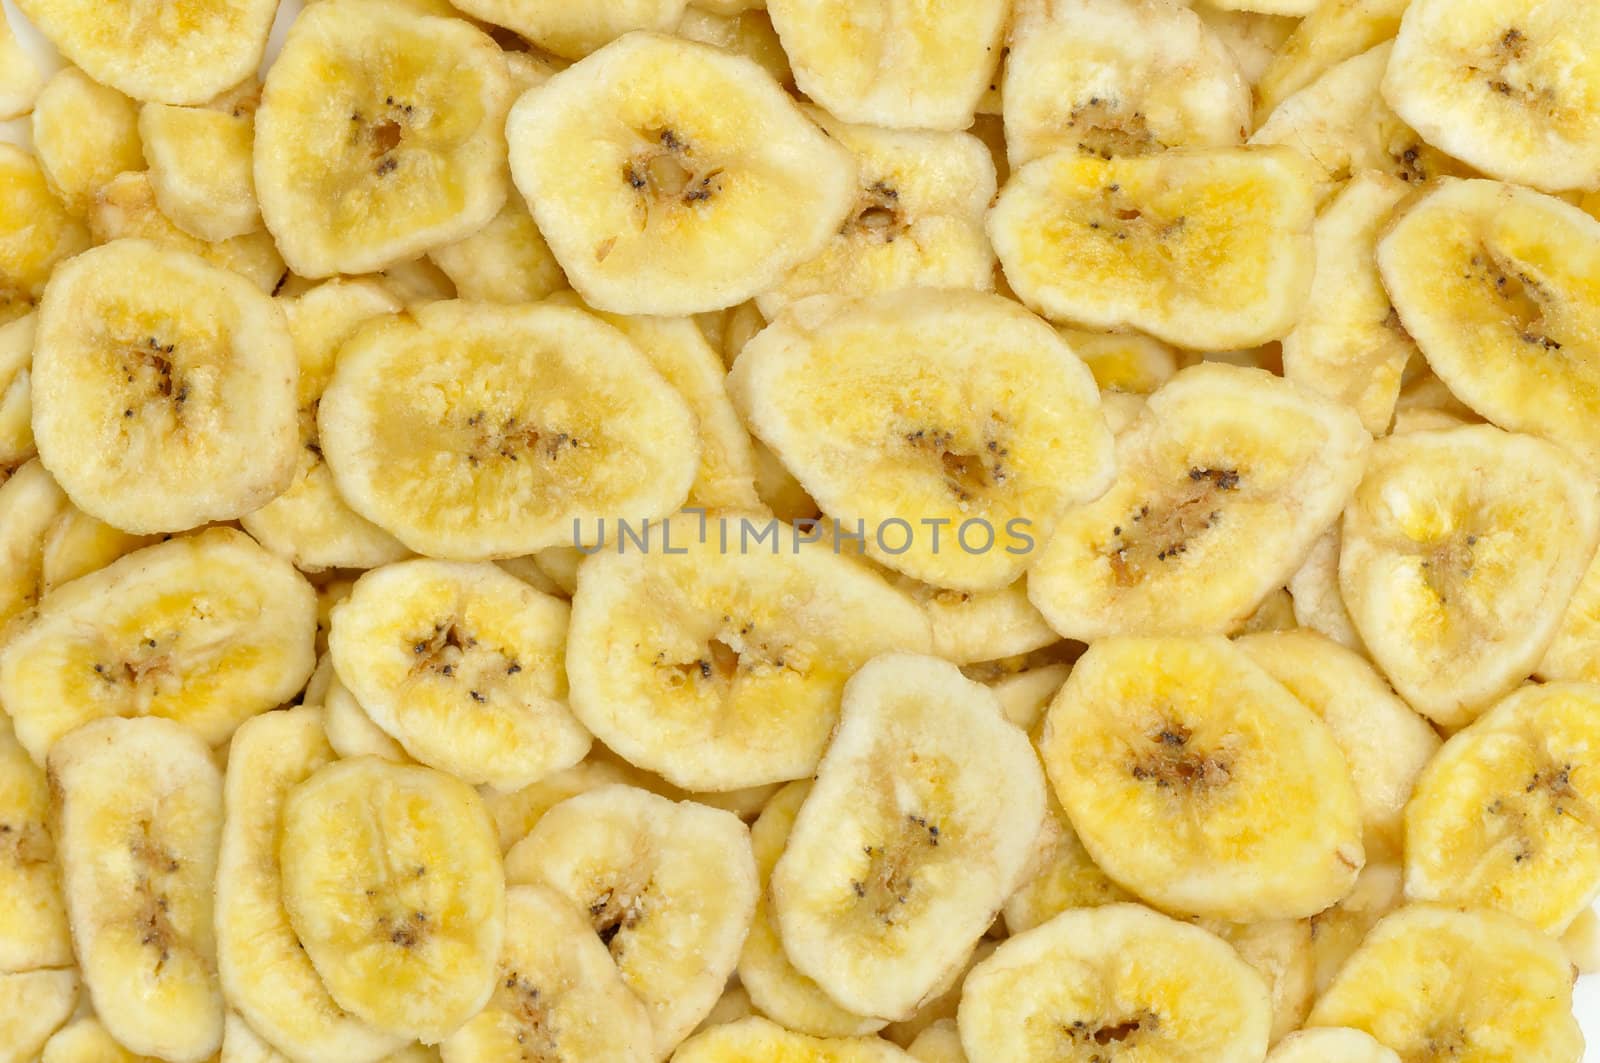 banana slices background by Hbak